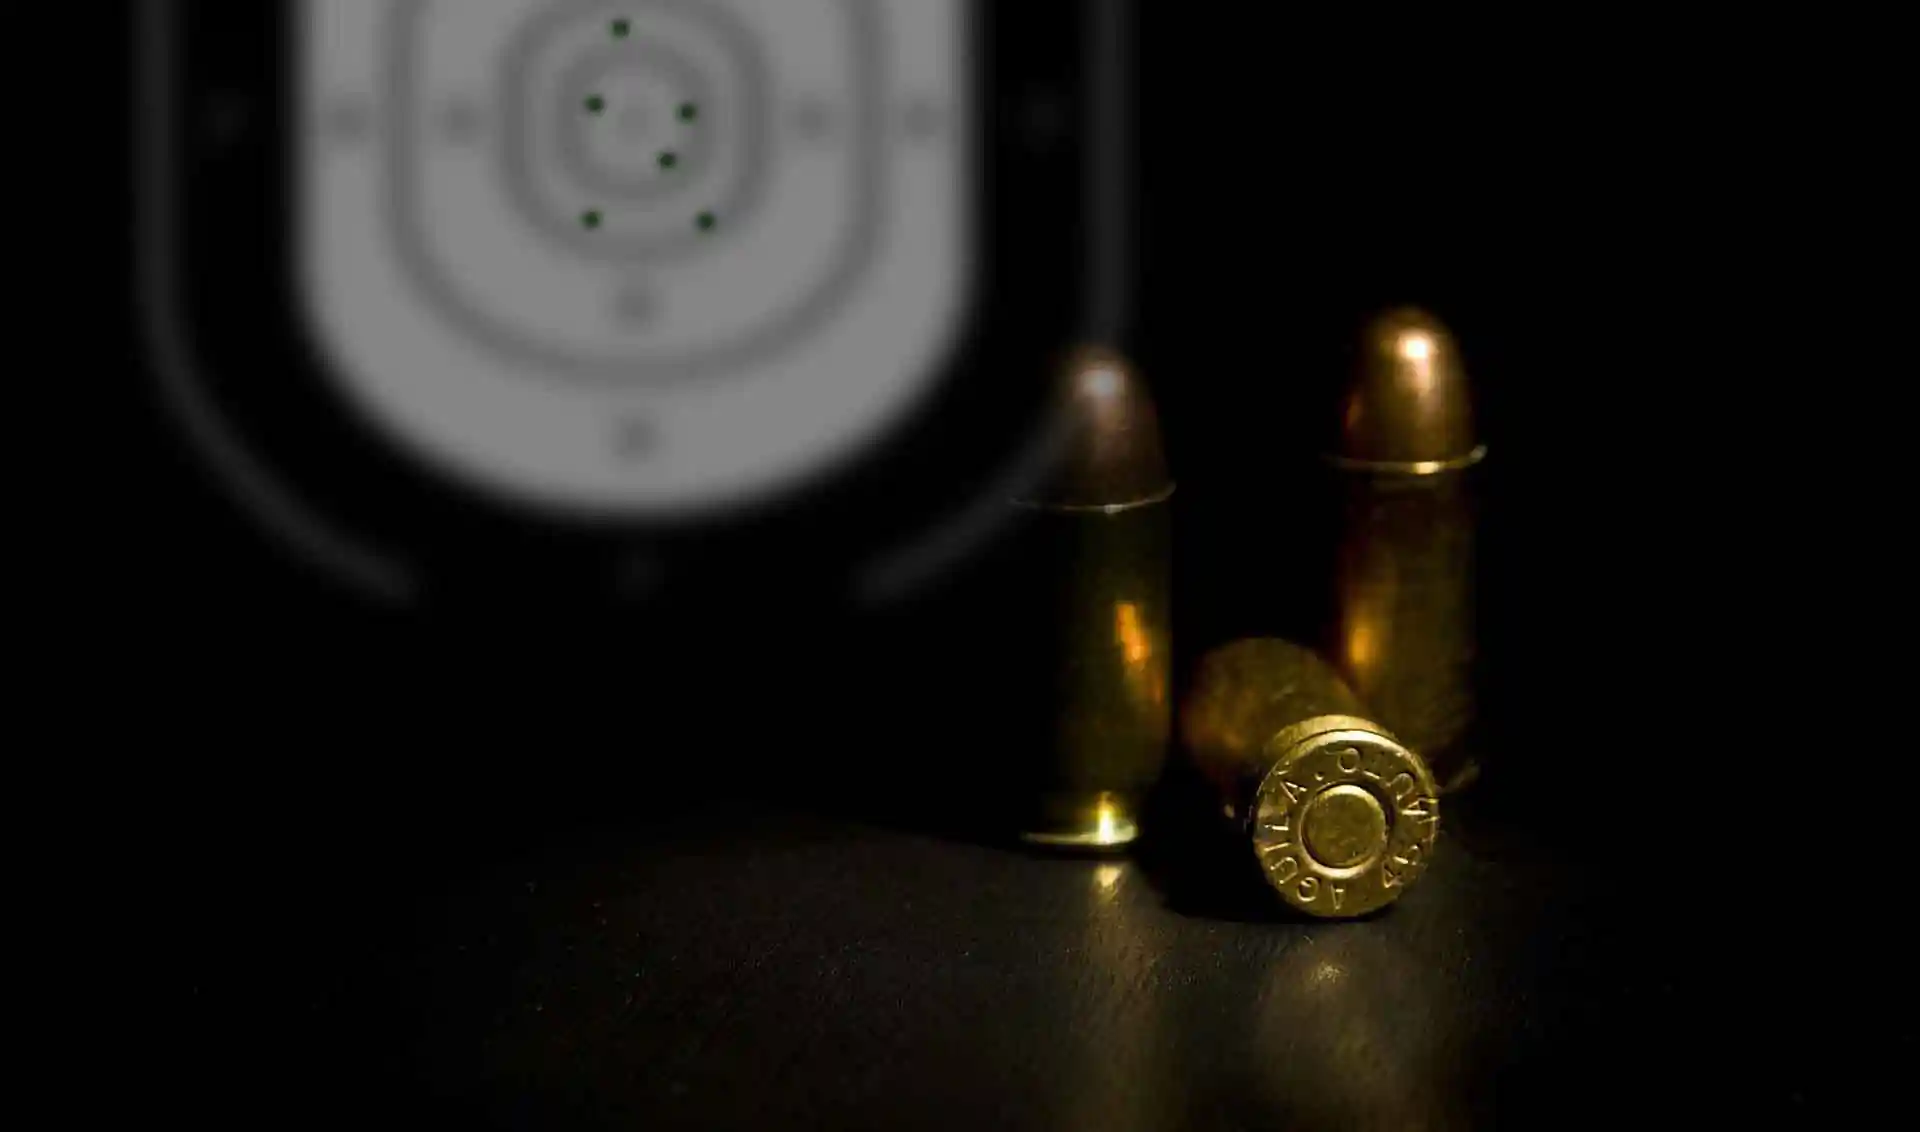 Sterling 9mm Luger Ammunition